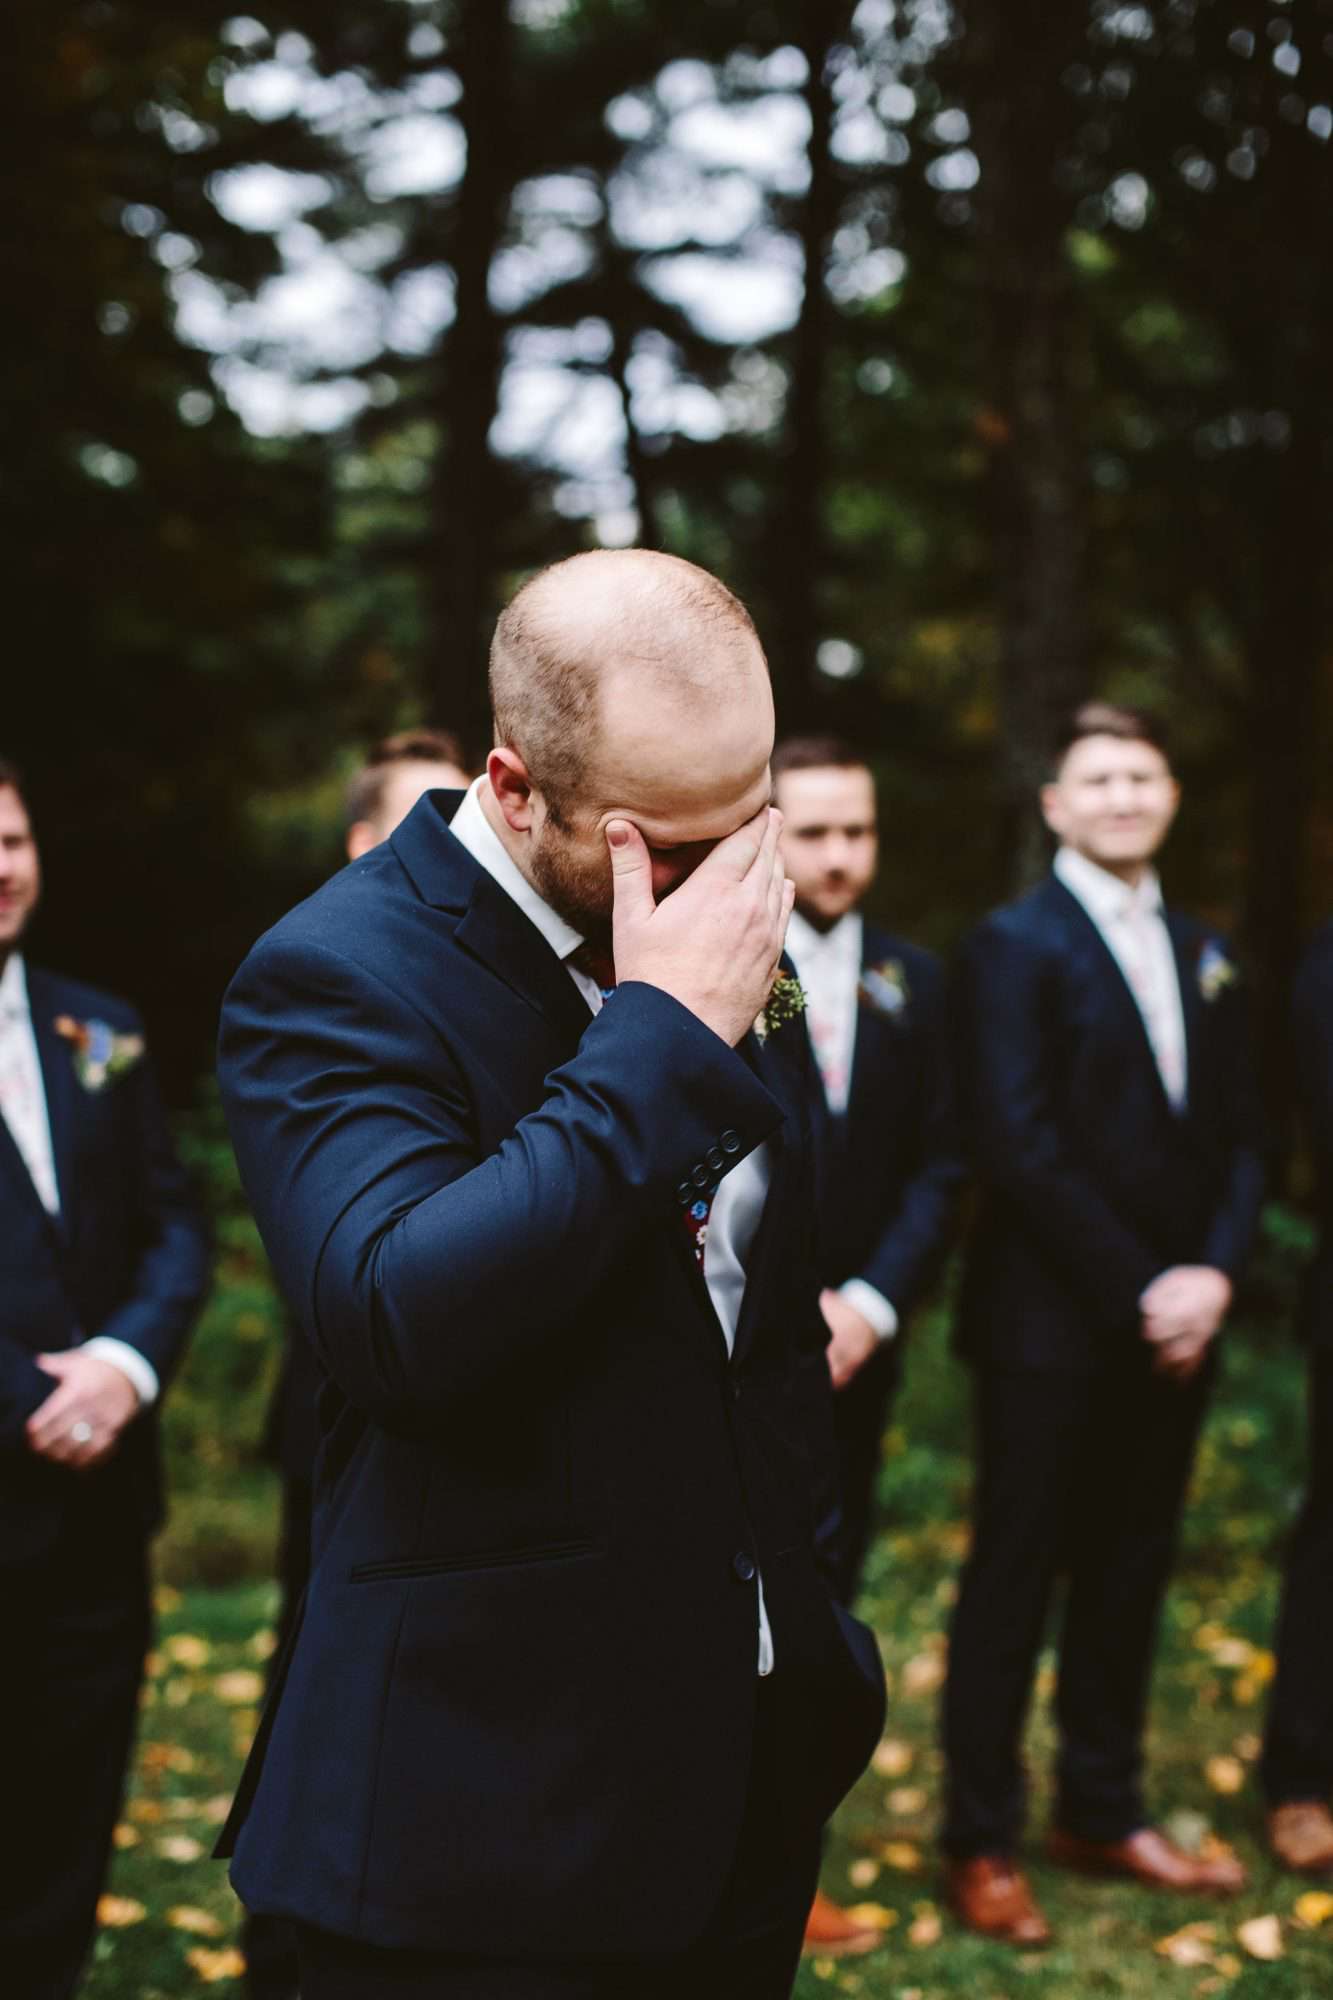 rivka aaron wedding emotional groom